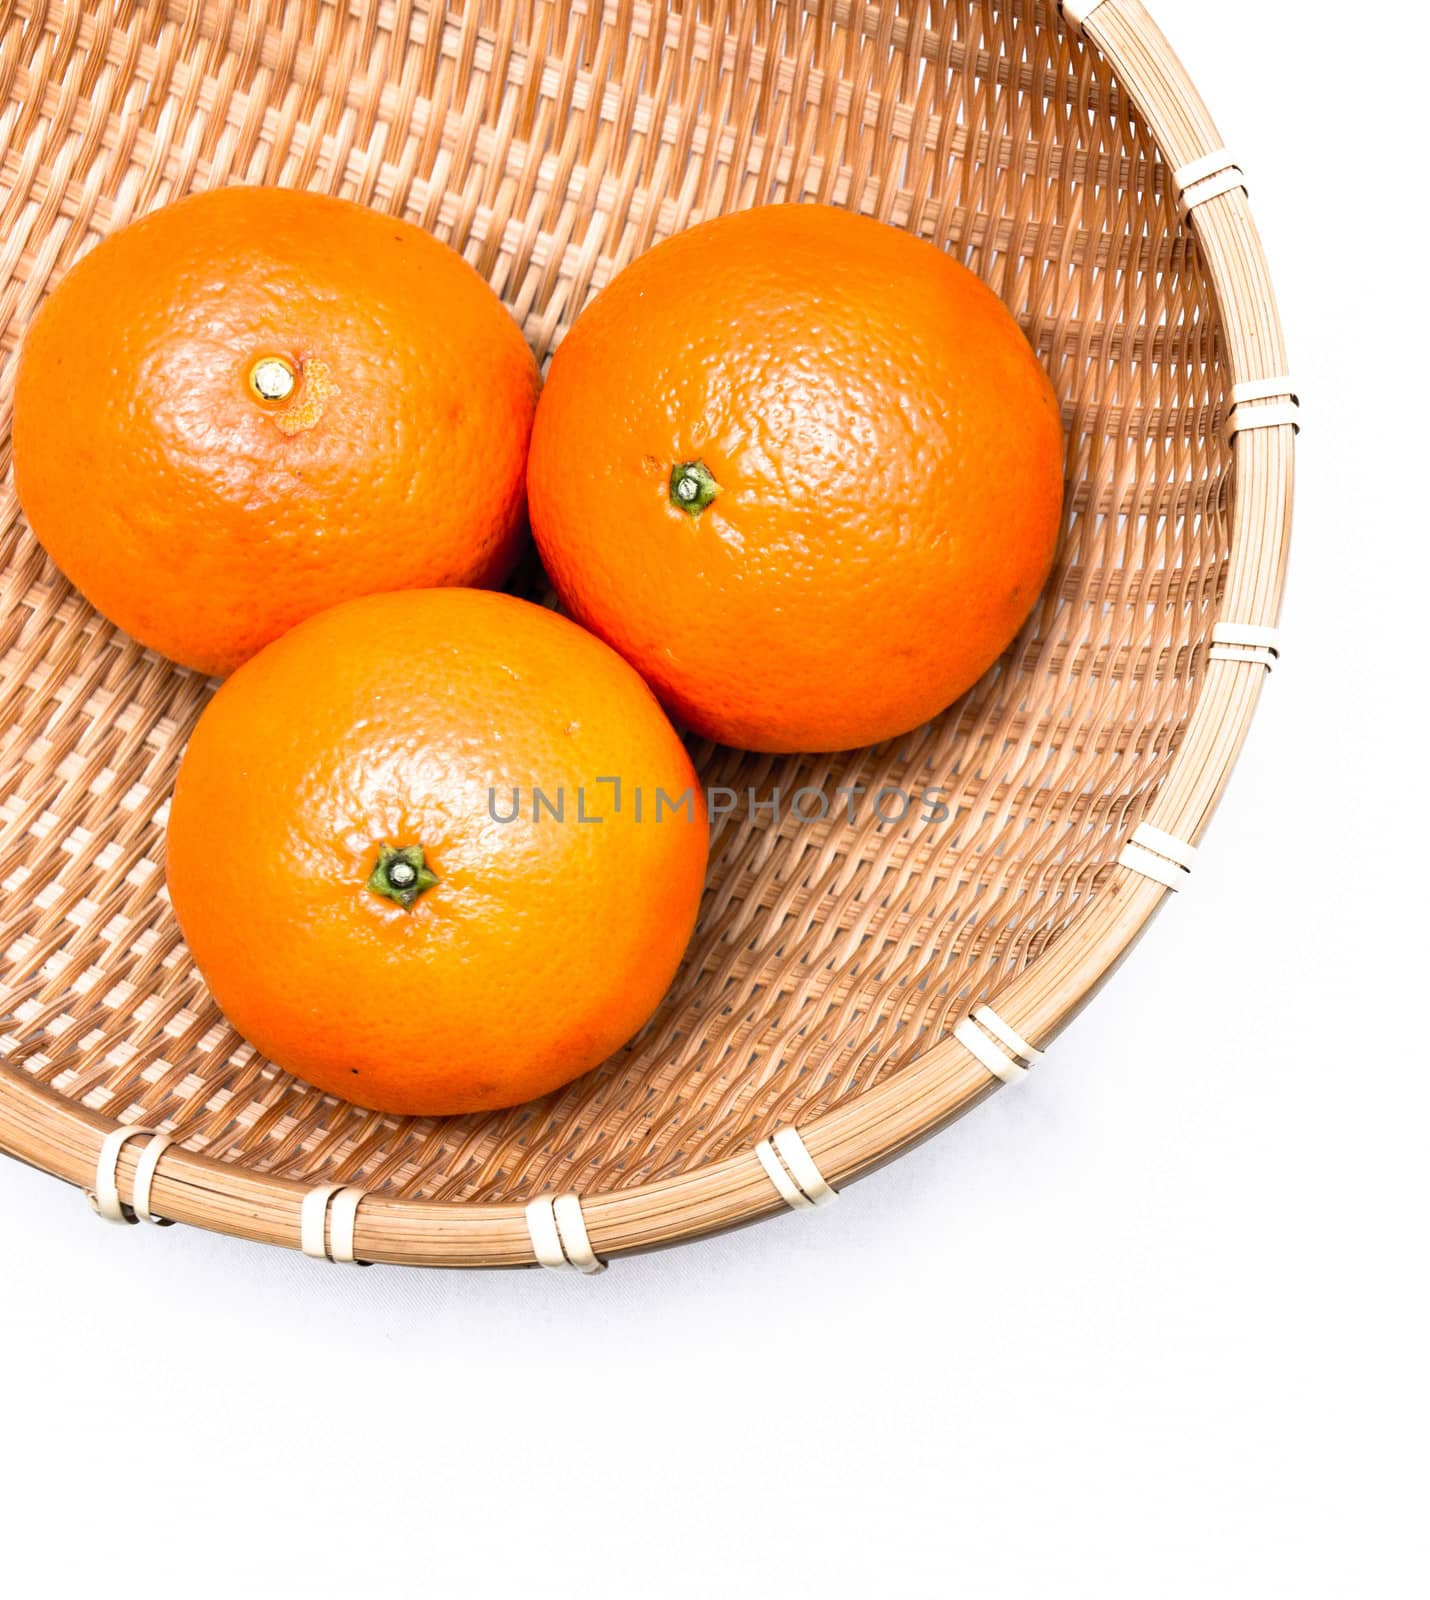 Three oranges lying inside a net basket, isolated on white background